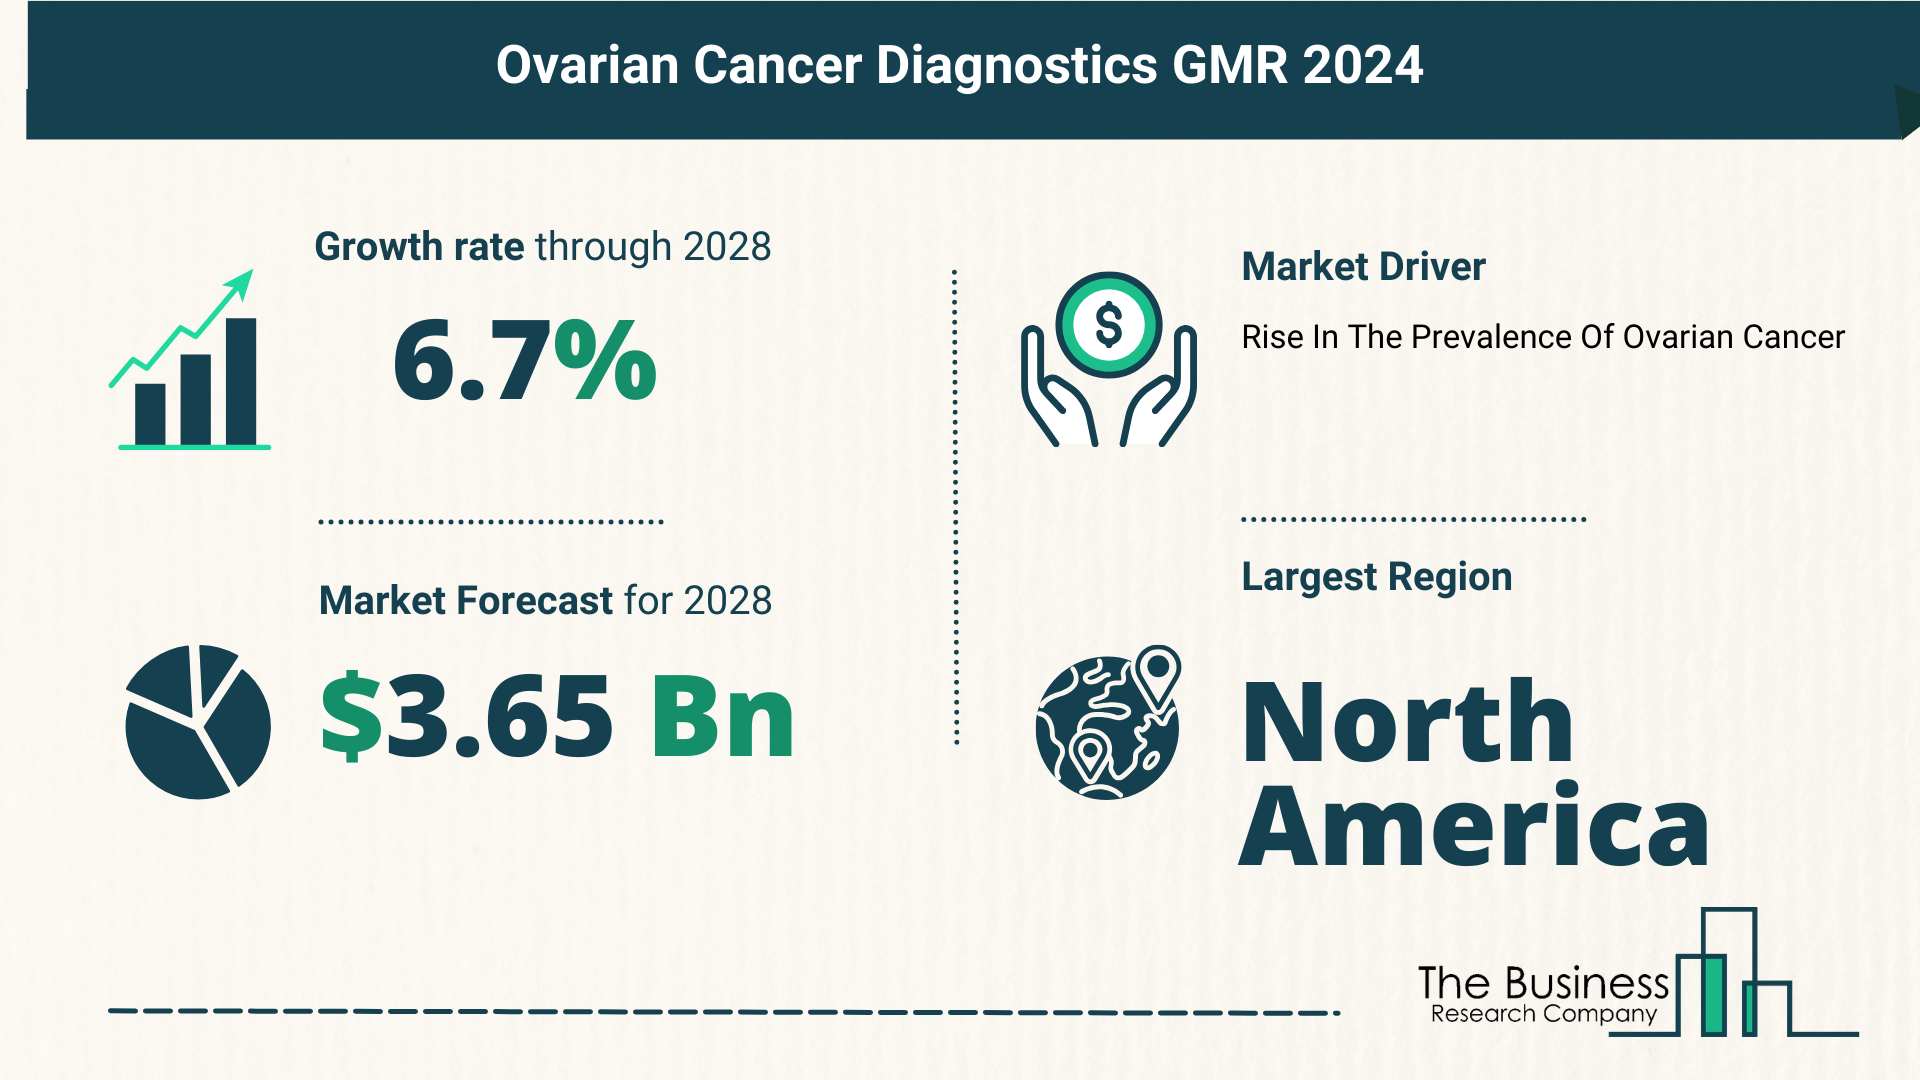 Global Ovarian Cancer Diagnostics Market